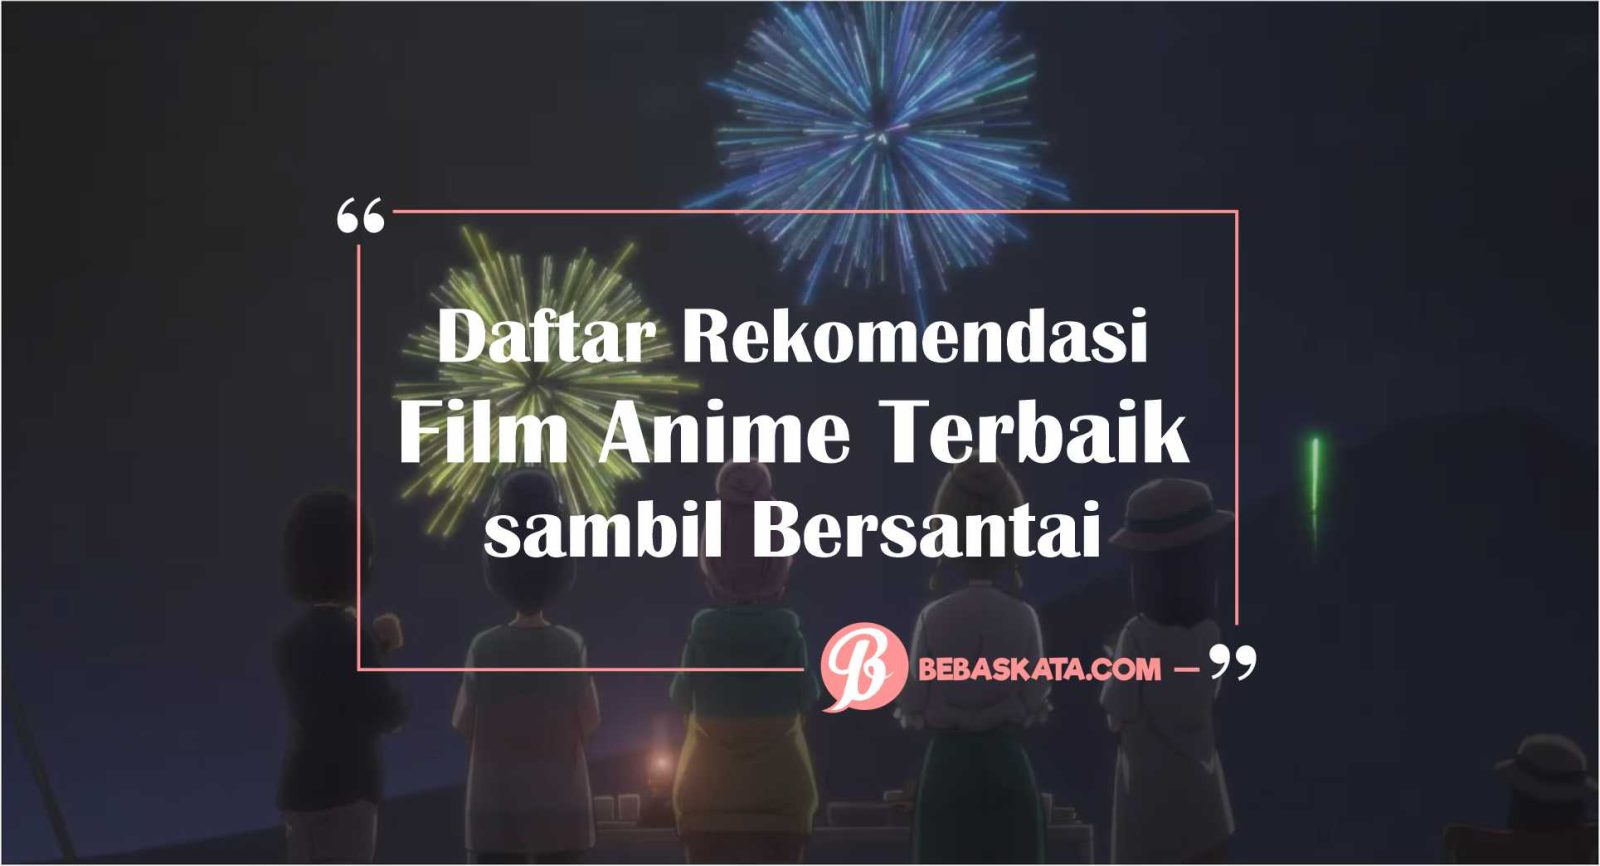 Daftar Rekomendasi Film Anime Terbaik sambil Bersantai